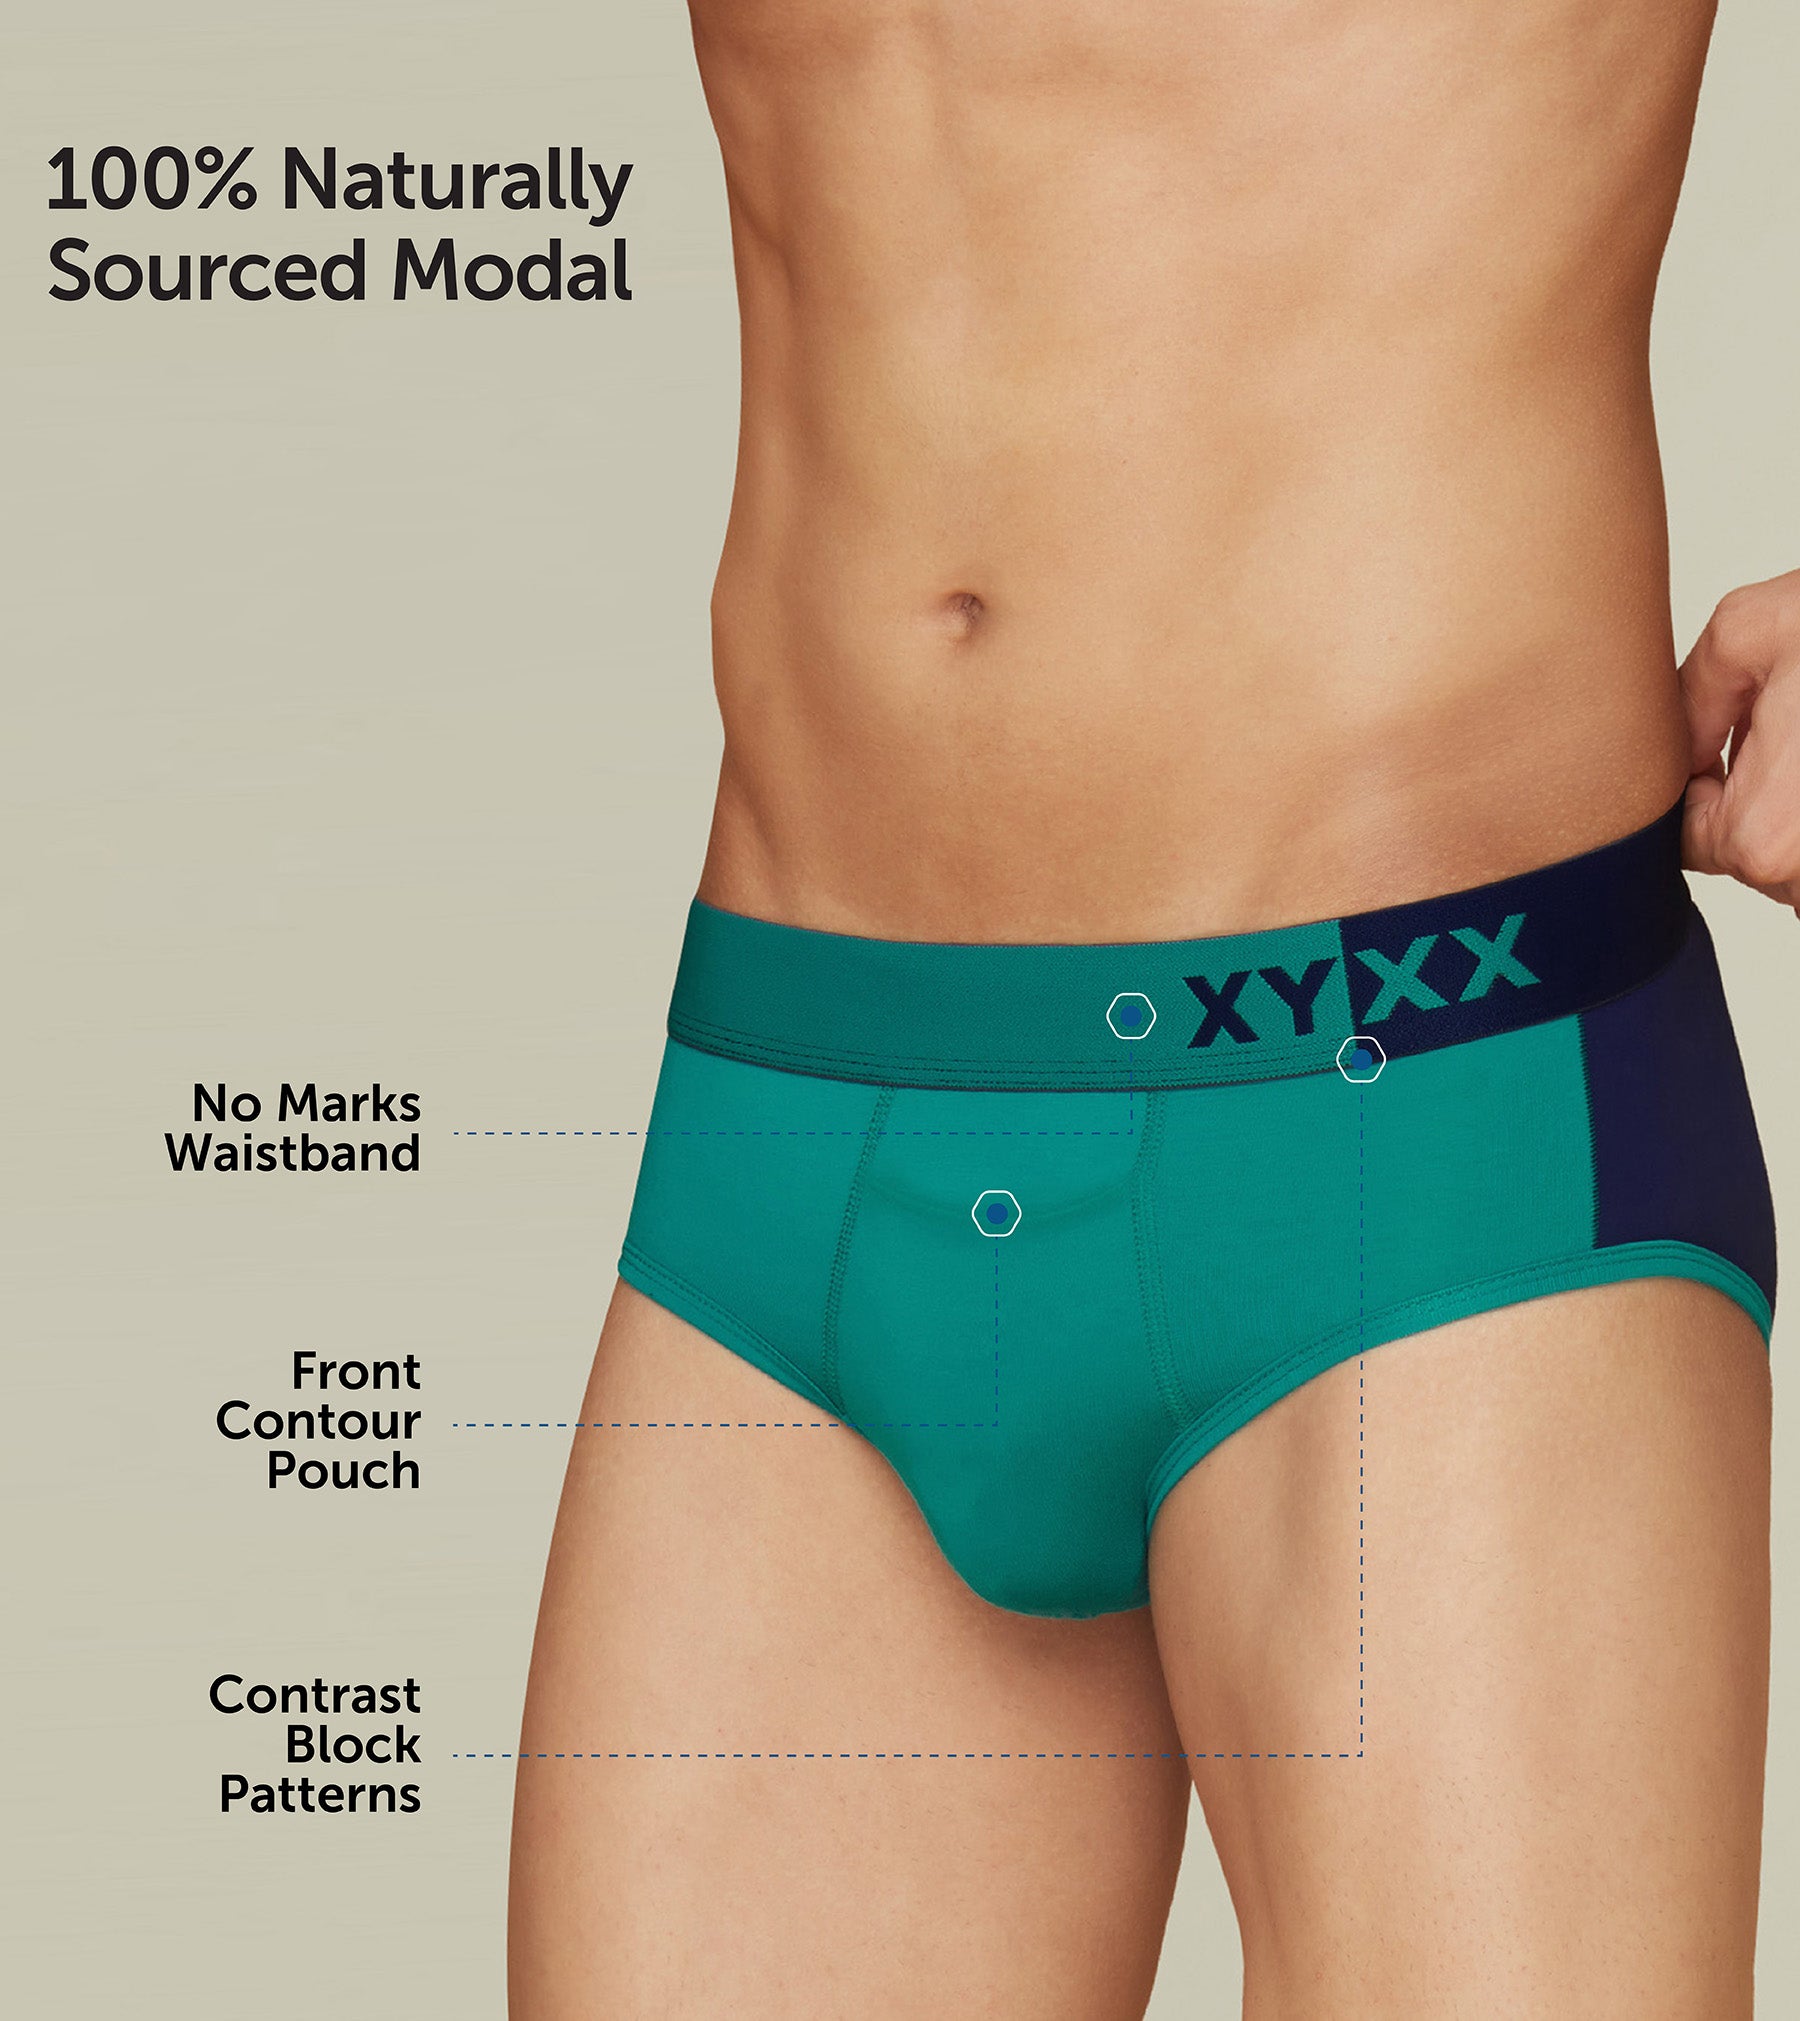 Dualist Modal Briefs For Men Aqua Green -  XYXX Mens Apparels